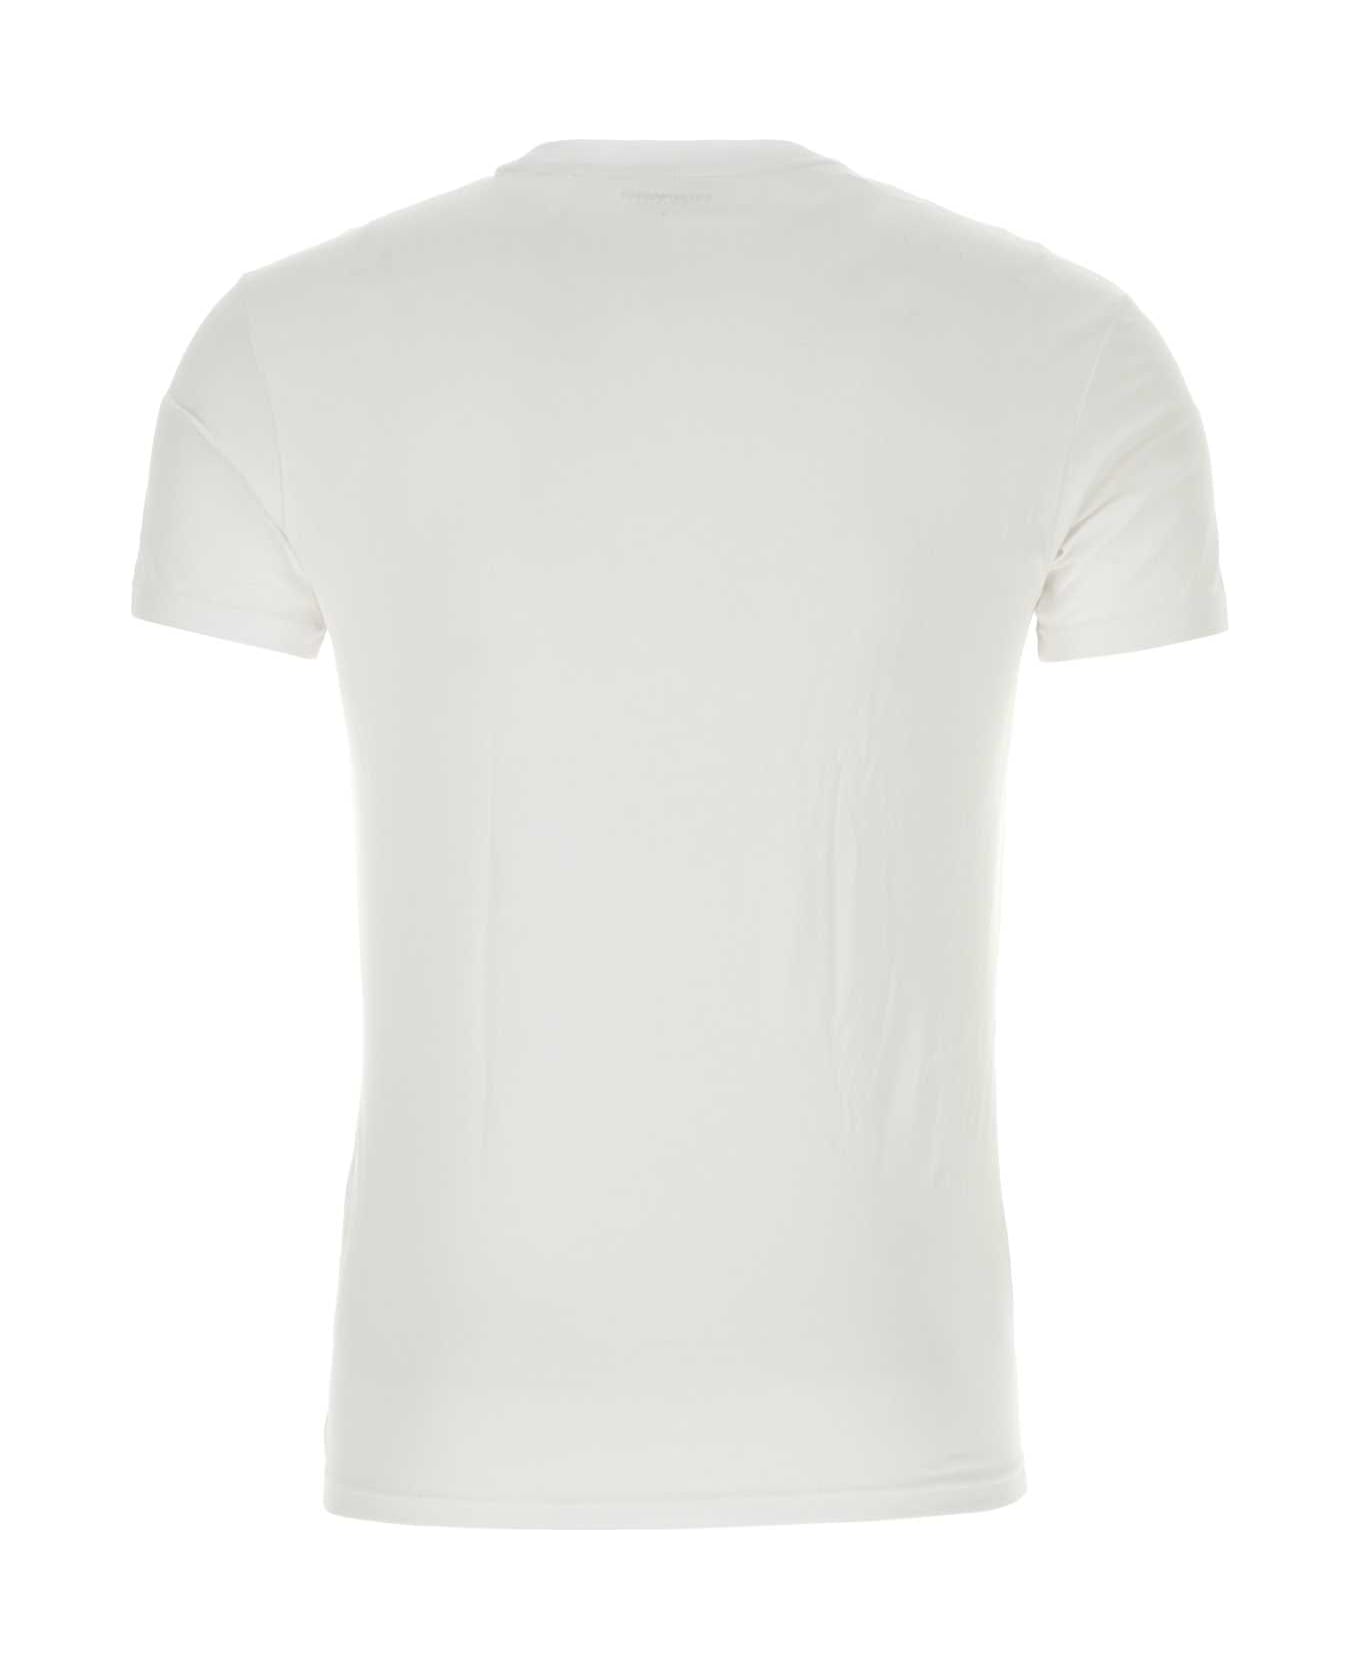 Emporio Armani White Stretch Cotton T-shirt - 00010 シャツ